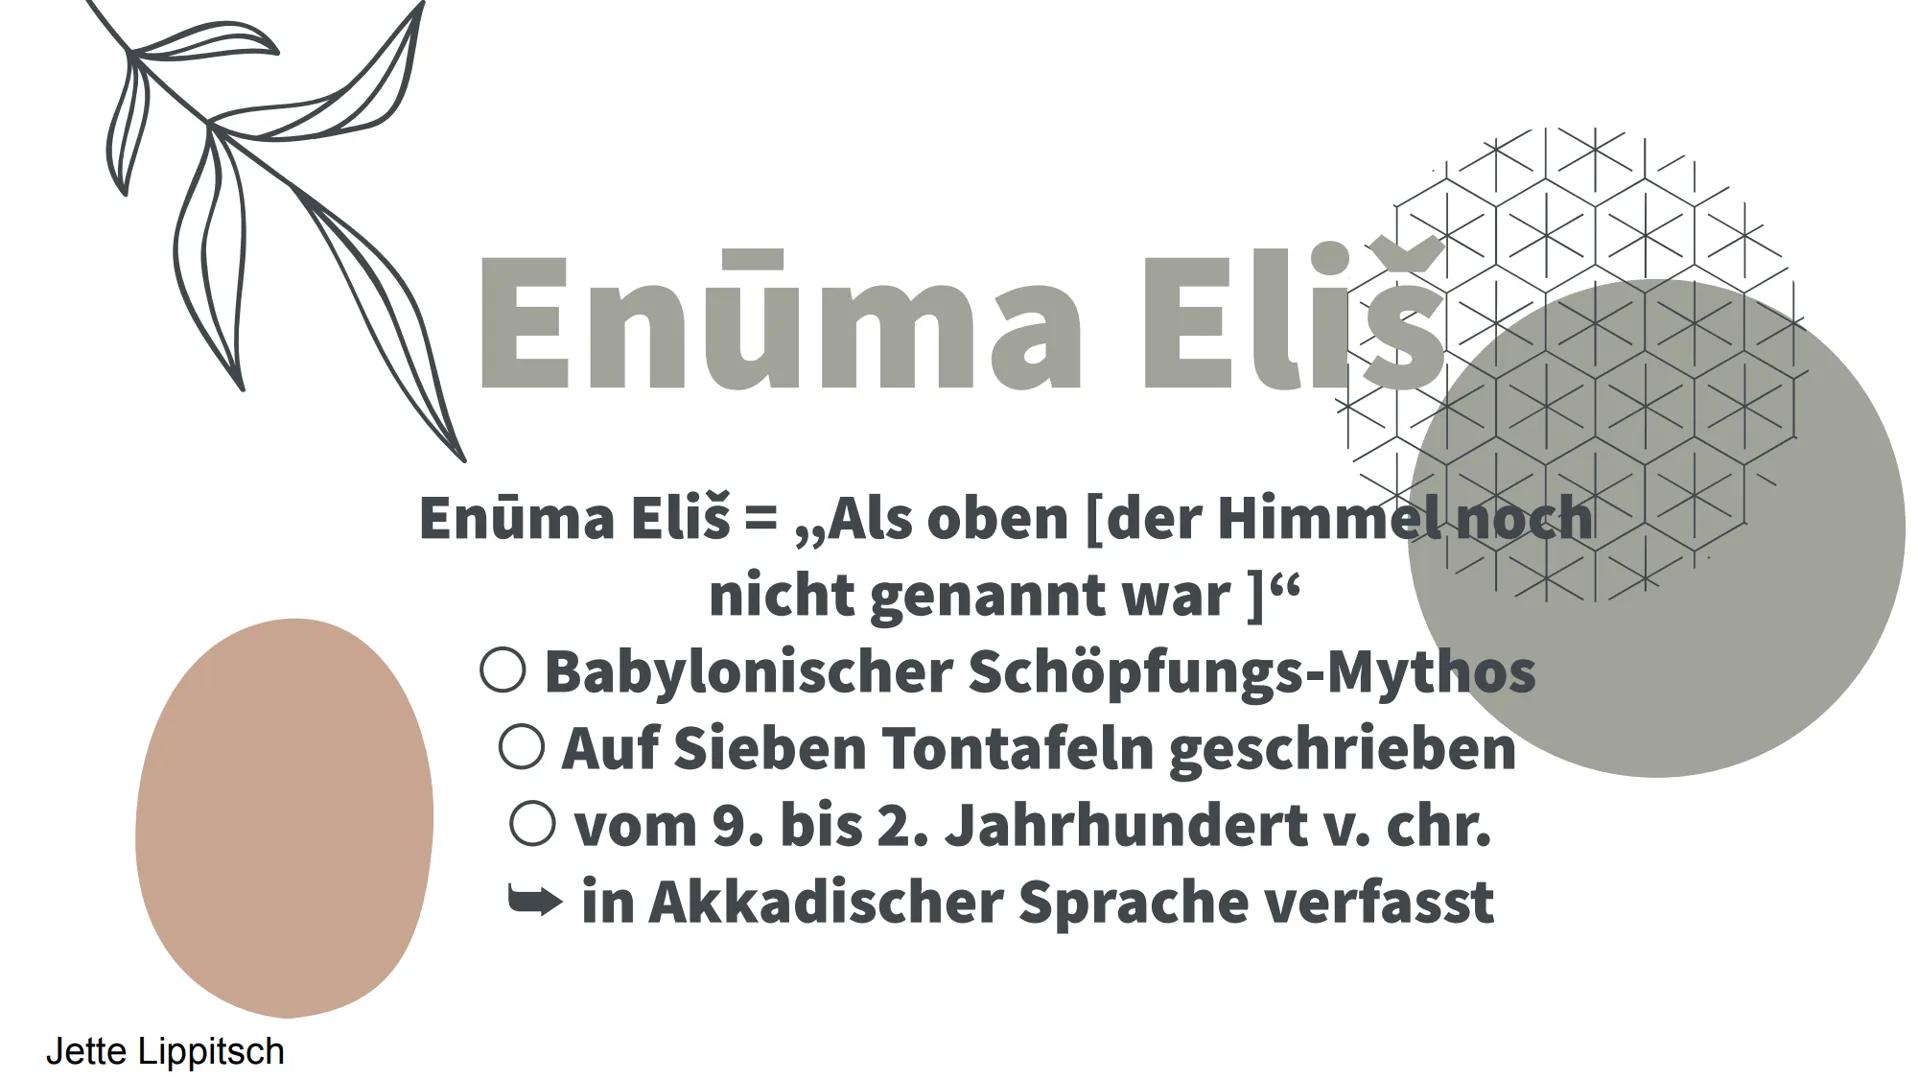 Enūma Eliš
Fach: Religion
Juliane Hübenthal
Jette Lippitsch Enúma eliš
Allgemein
Enuma elisch ist ein babylonischer Mythos, der die Bibelfor